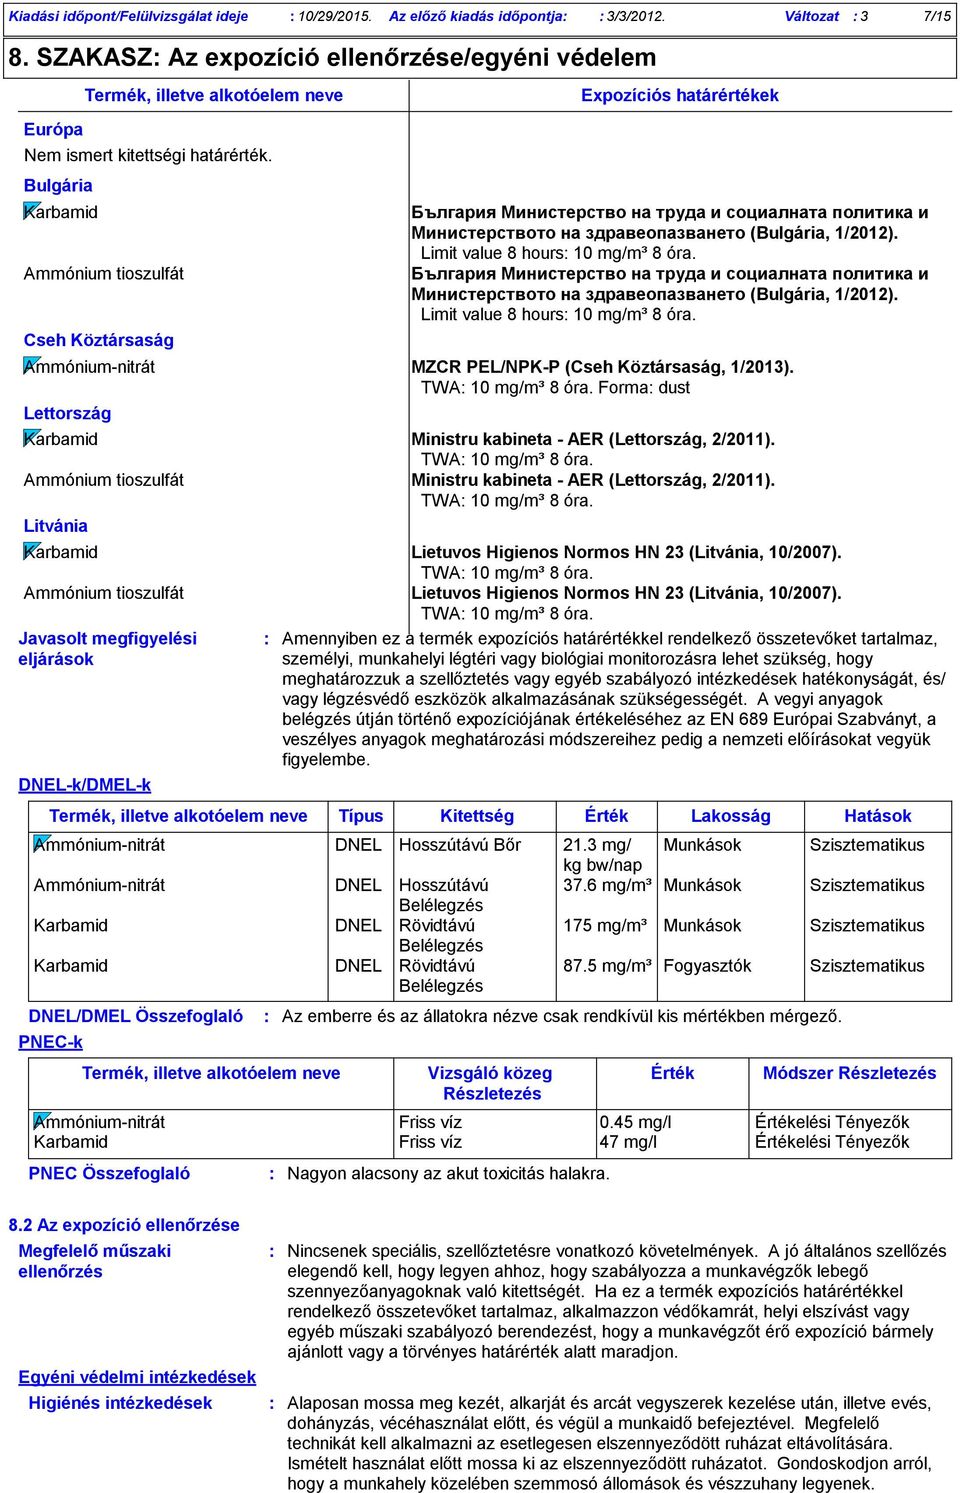 Bulgária Karbamid Ammónium tioszulfát Cseh Köztársaság Ammóniumnitrát MZCR PEL/NPKP (Cseh Köztársaság, 1/2013). TWA 10 mg/m³ 8 óra.